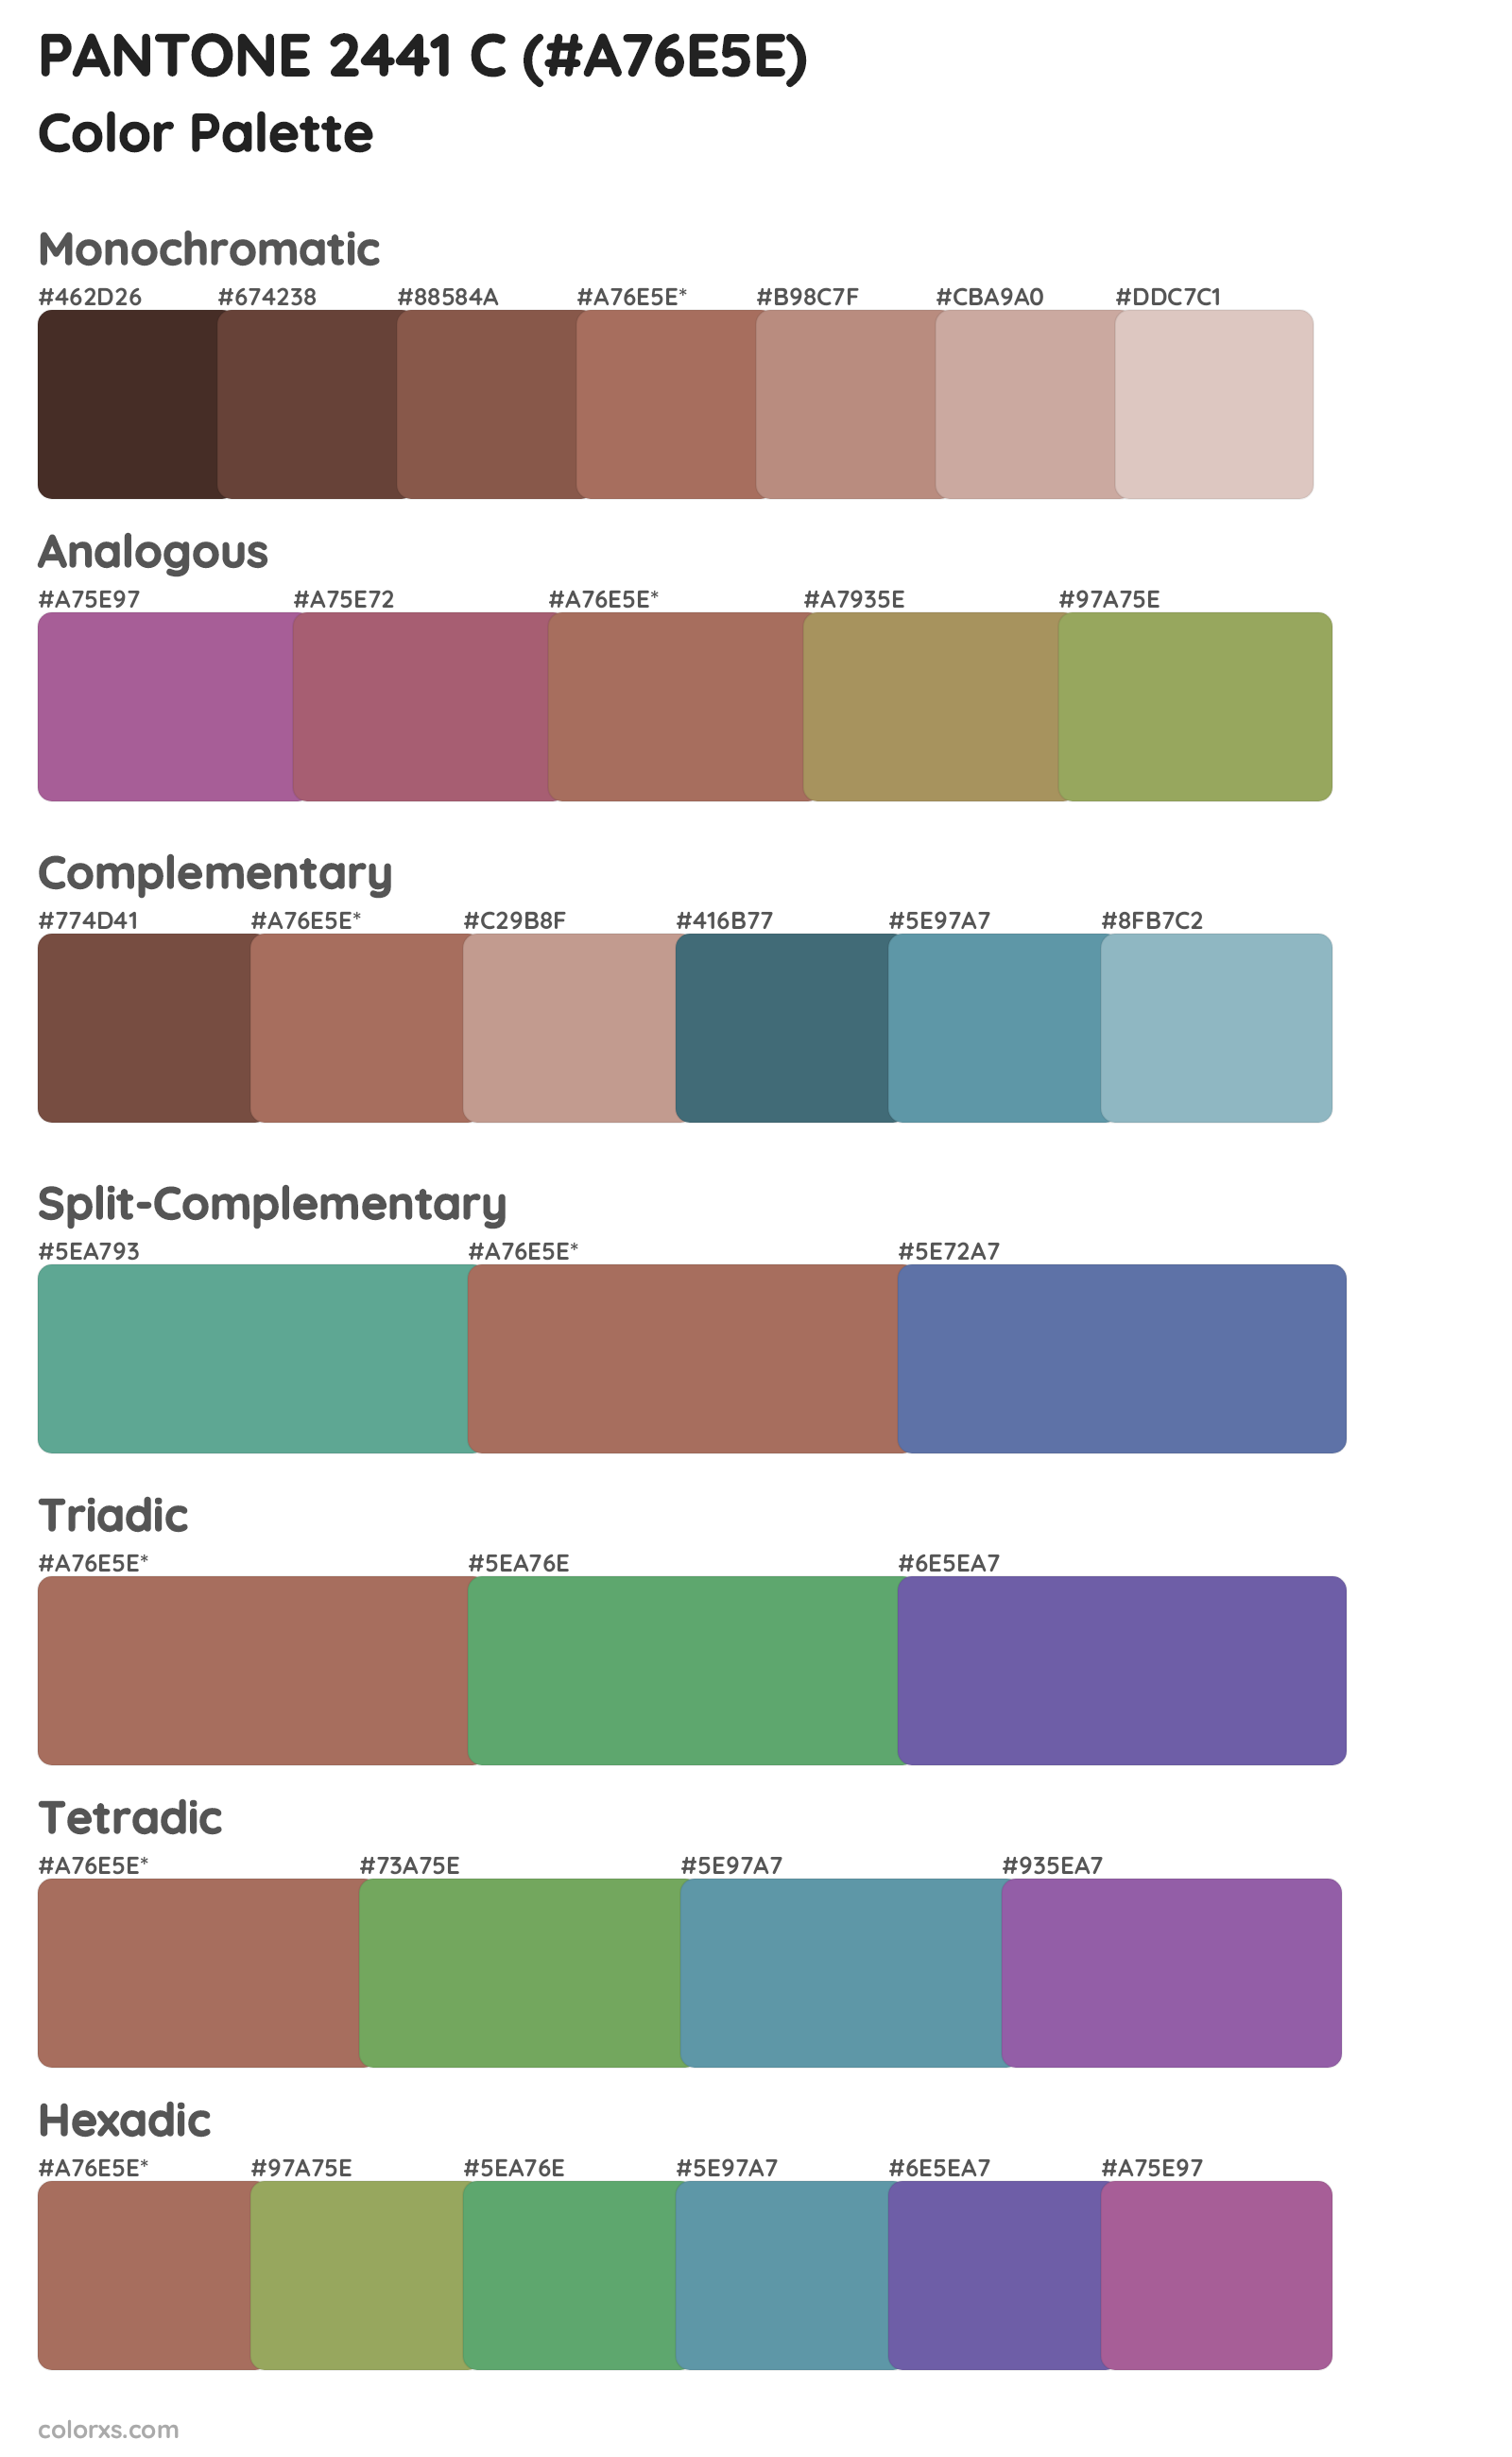 PANTONE 2441 C Color Scheme Palettes